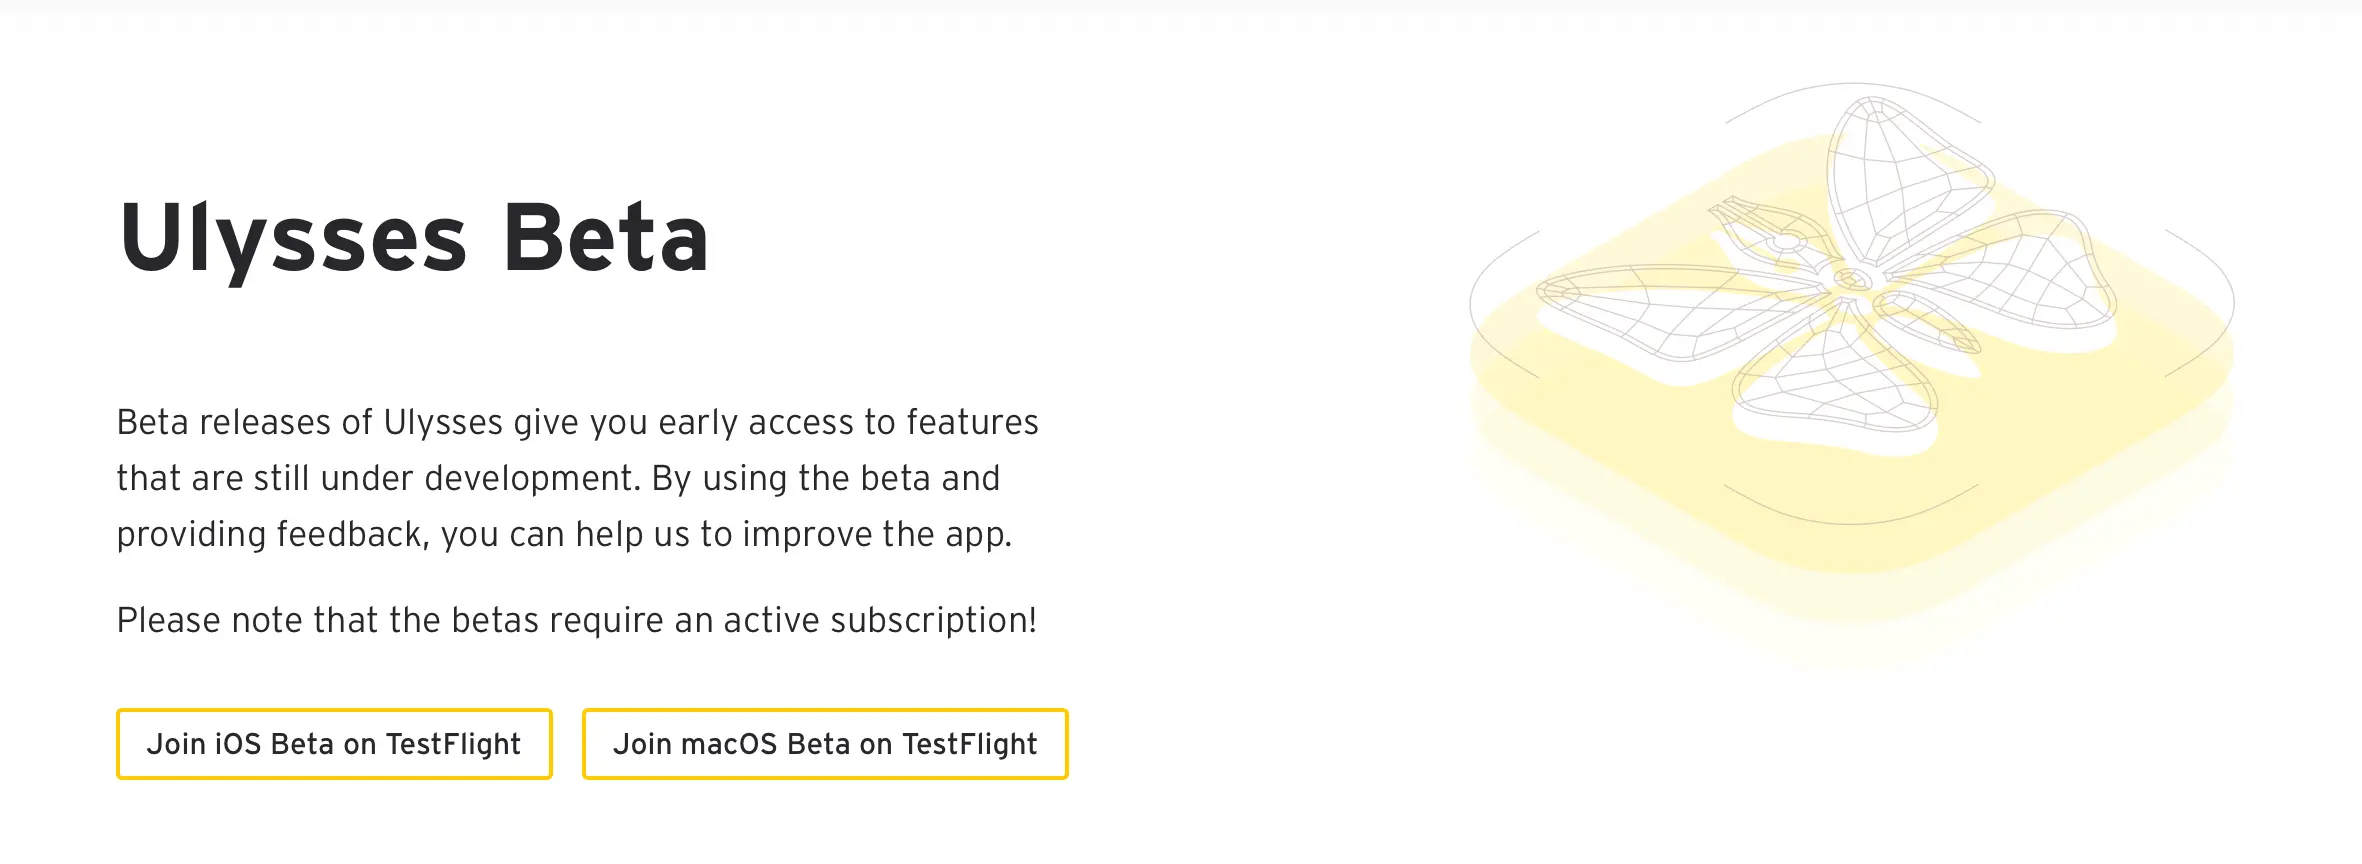 Ulysses Beta 发布，提供 macOS/iOS 两个平台内测招募